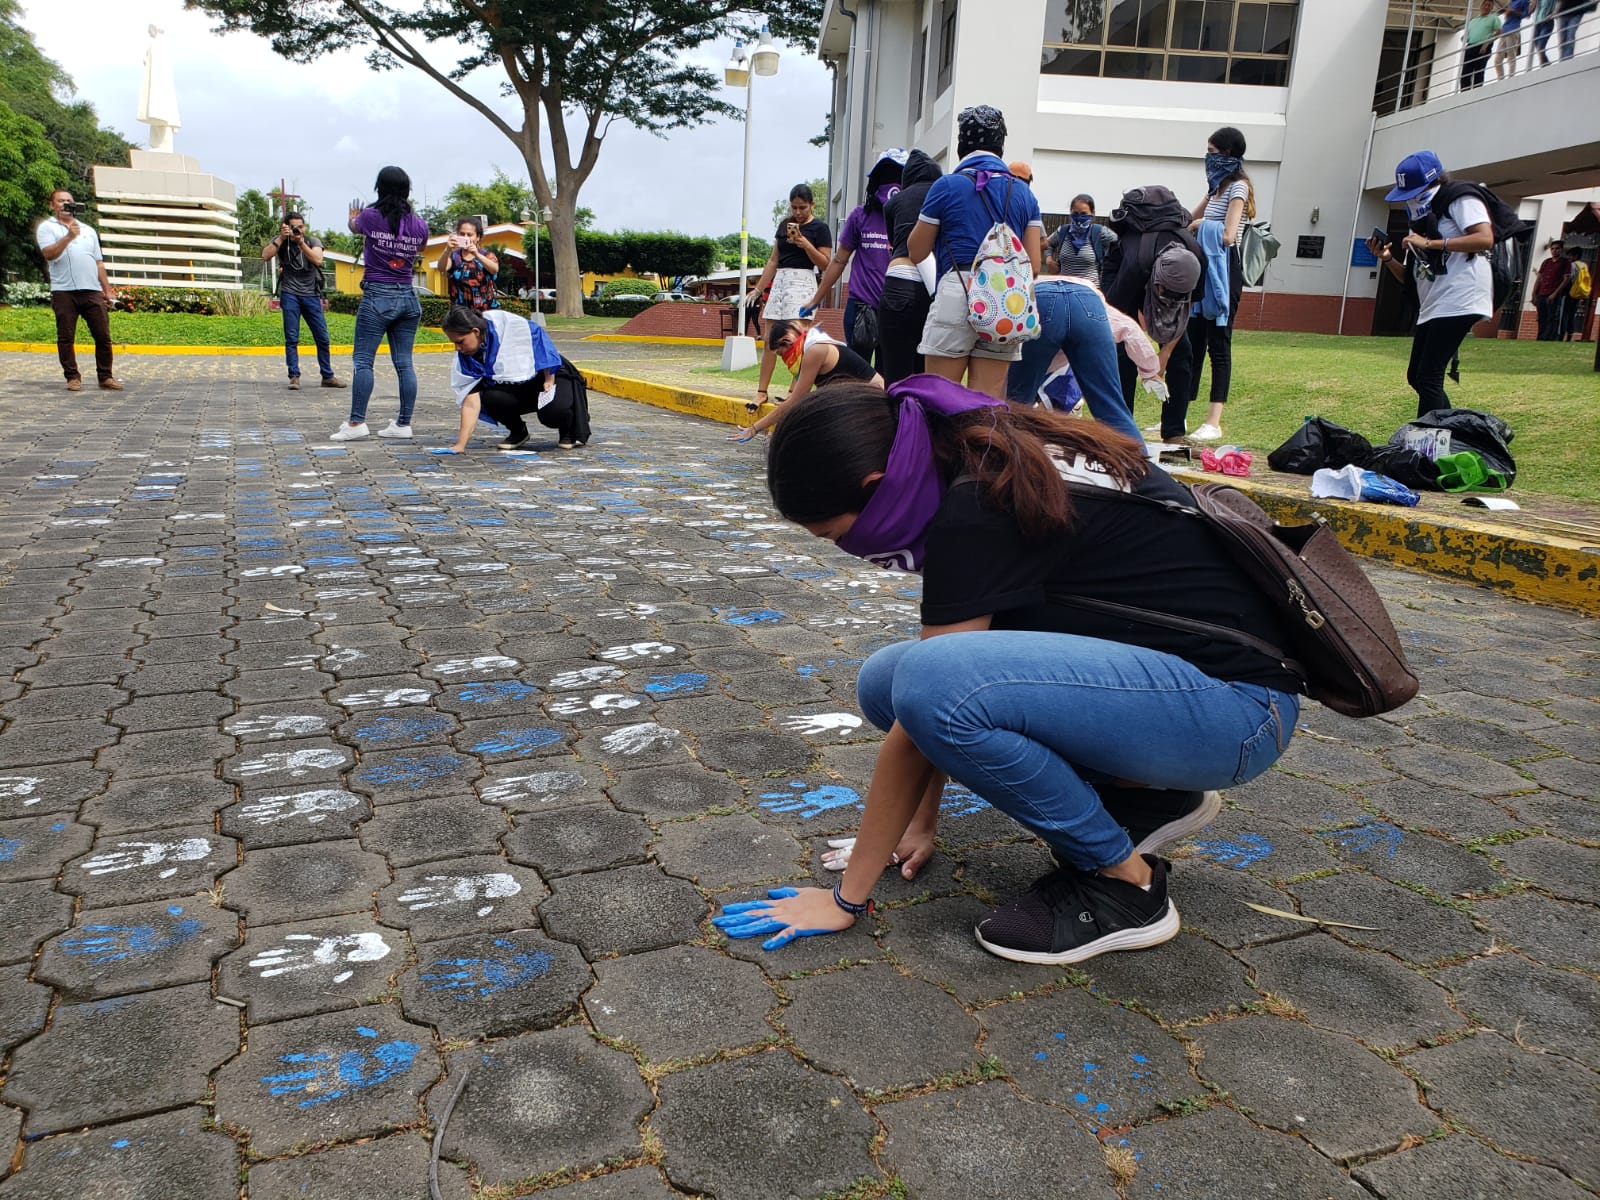 Señalaron que significa que los estudiantes siguen en resistencia para demandar justicia y libertad para Nicaragua. Foto: G. Shiffman / Artículo 66